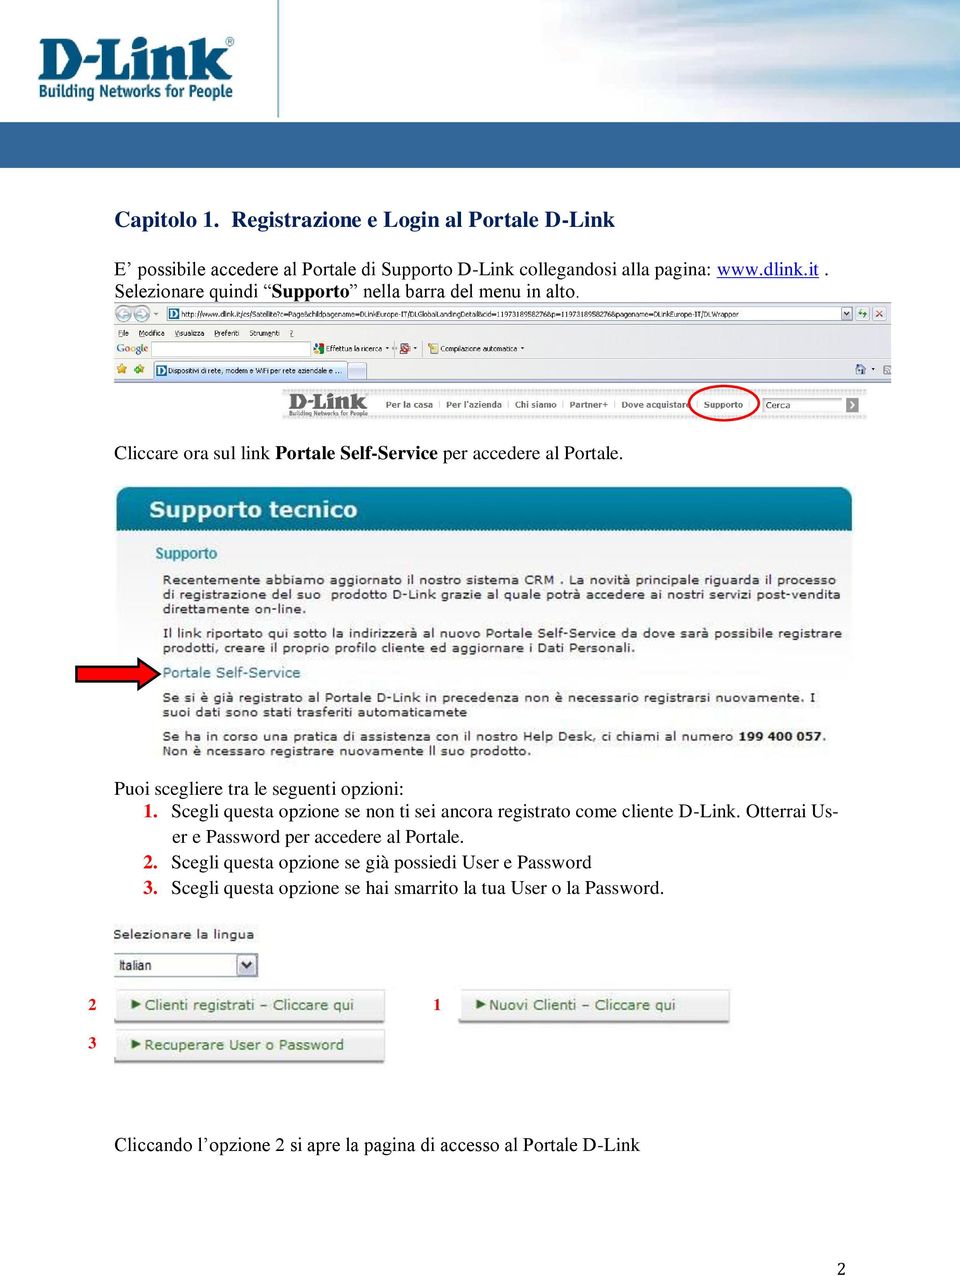 Scegli questa opzione se non ti sei ancora registrato come cliente D-Link. Otterrai User e Password per accedere al Portale. 2.